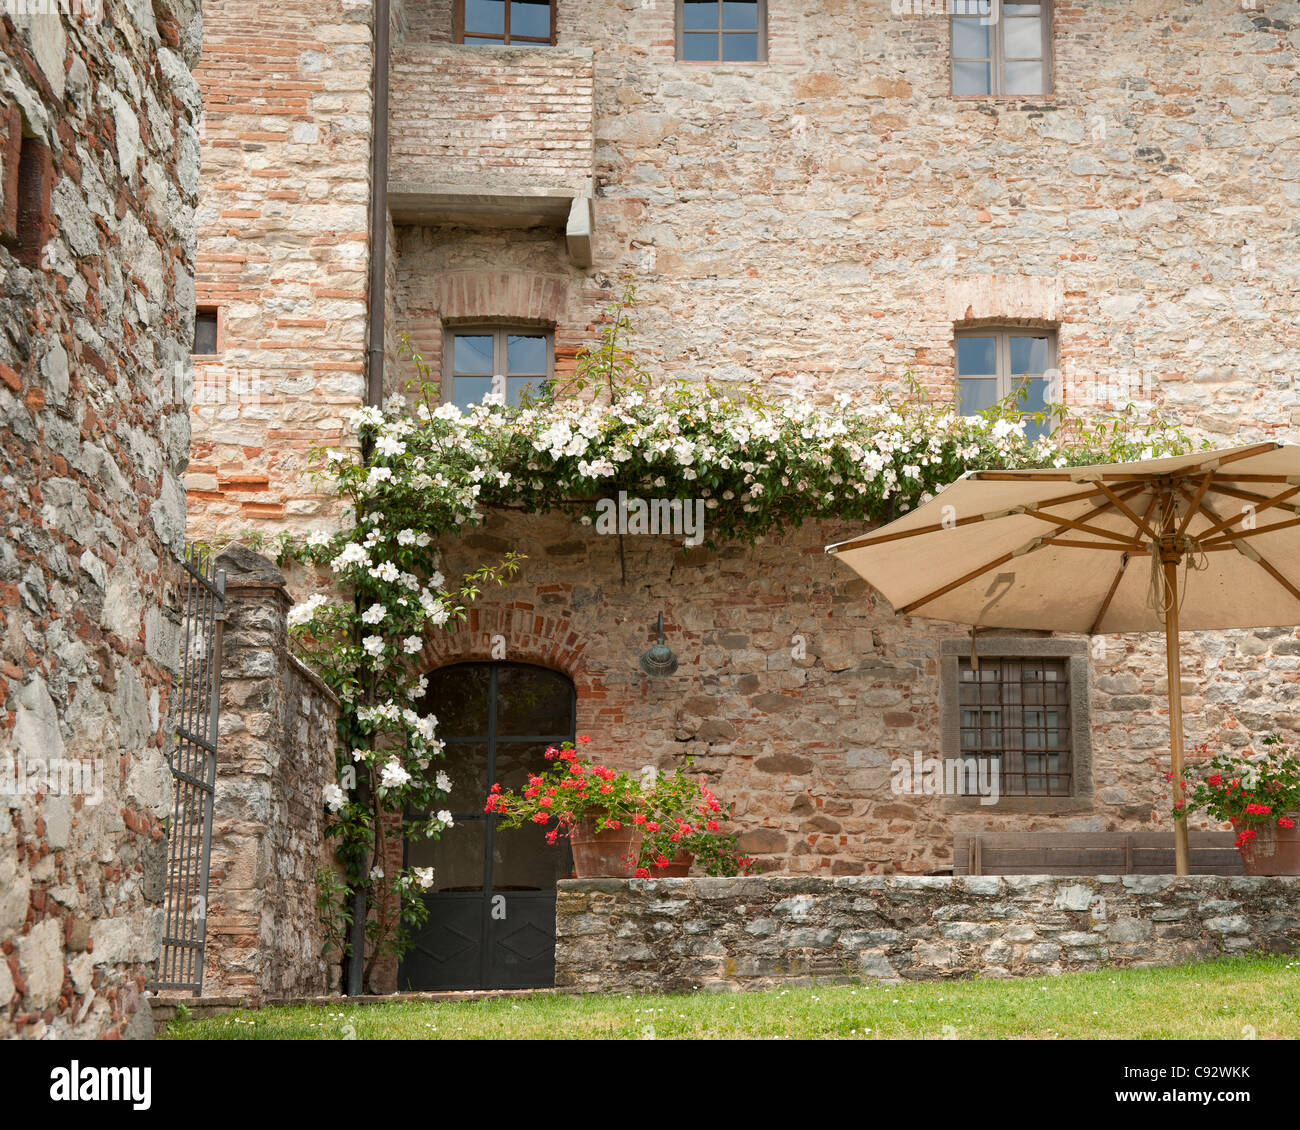 Das warme Klima in der Toskana in Italien bedeutet seine einfache erfolgreich wachsen eine Fülle von bunten Blumen, die einfach zu züchten sind Stockfoto